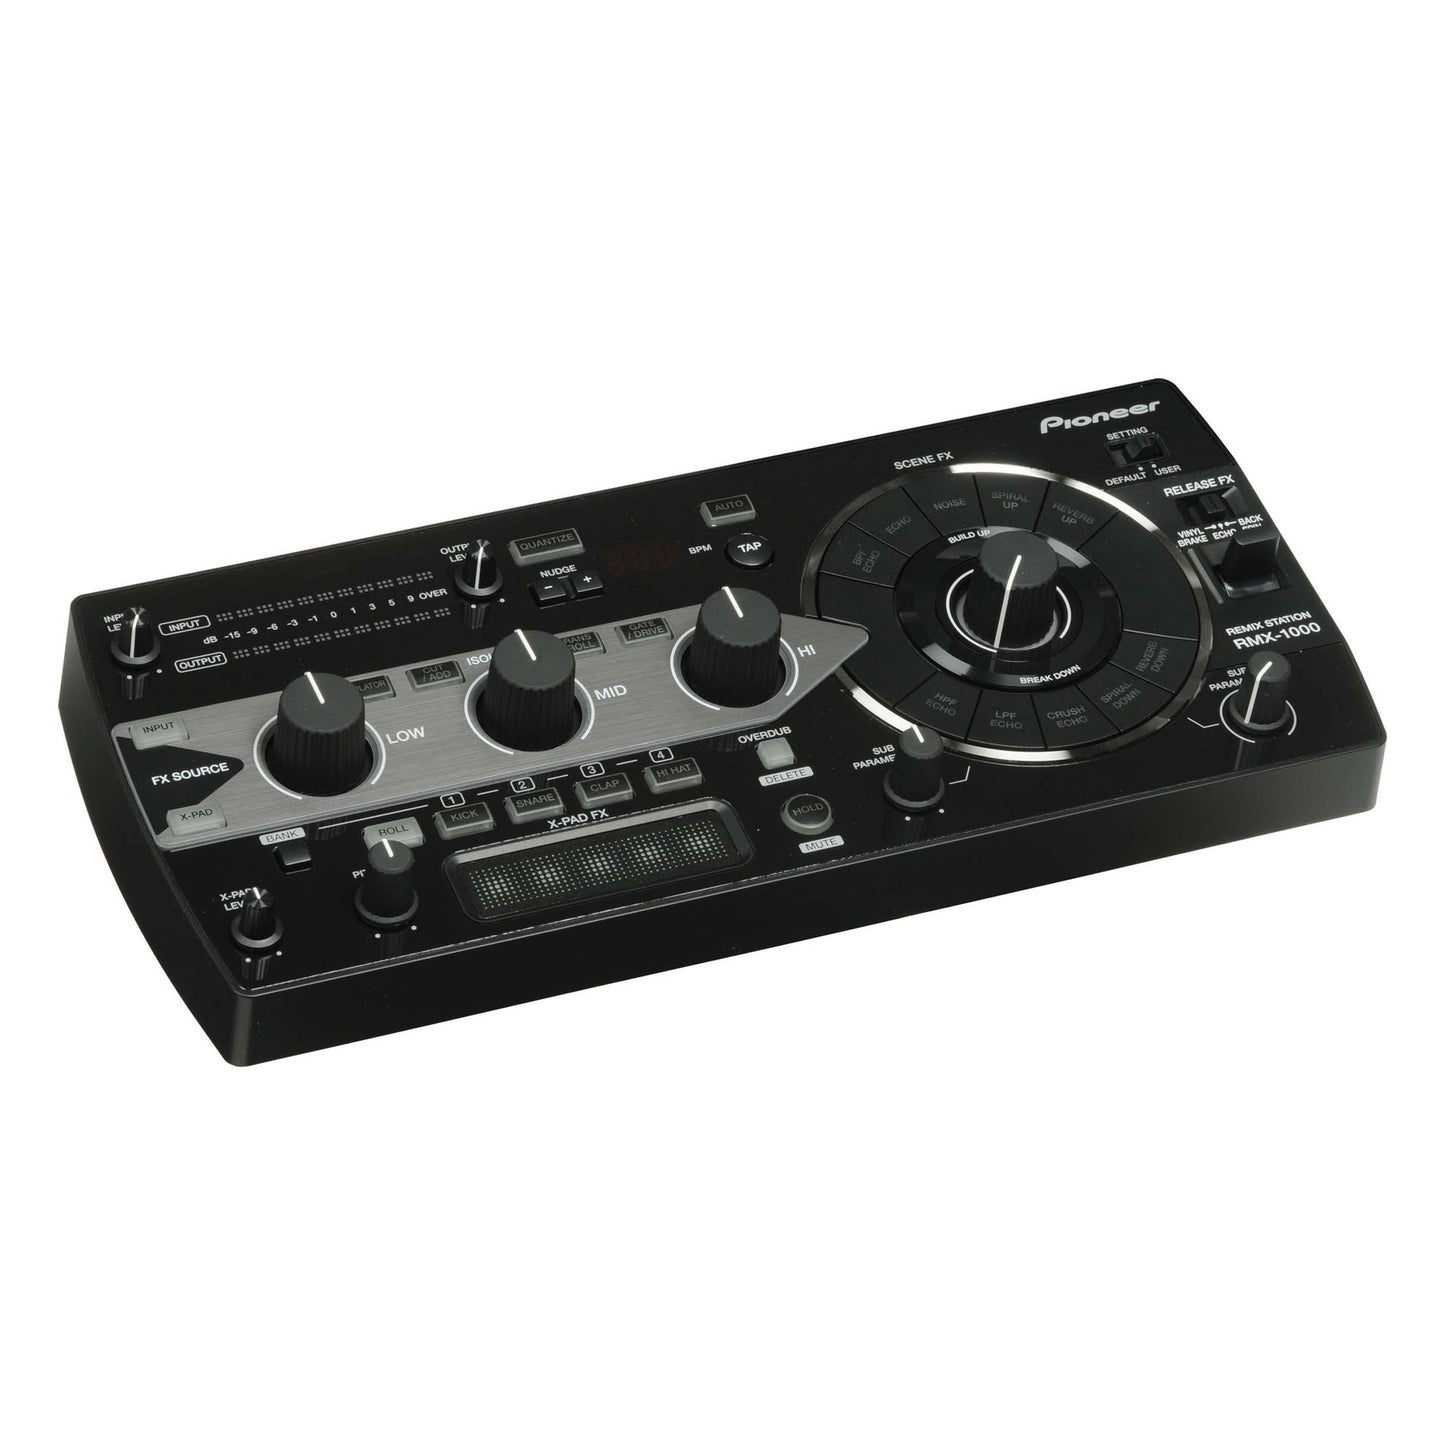 Pioneer RMX-1000 Remix Station DJ Effects Processor